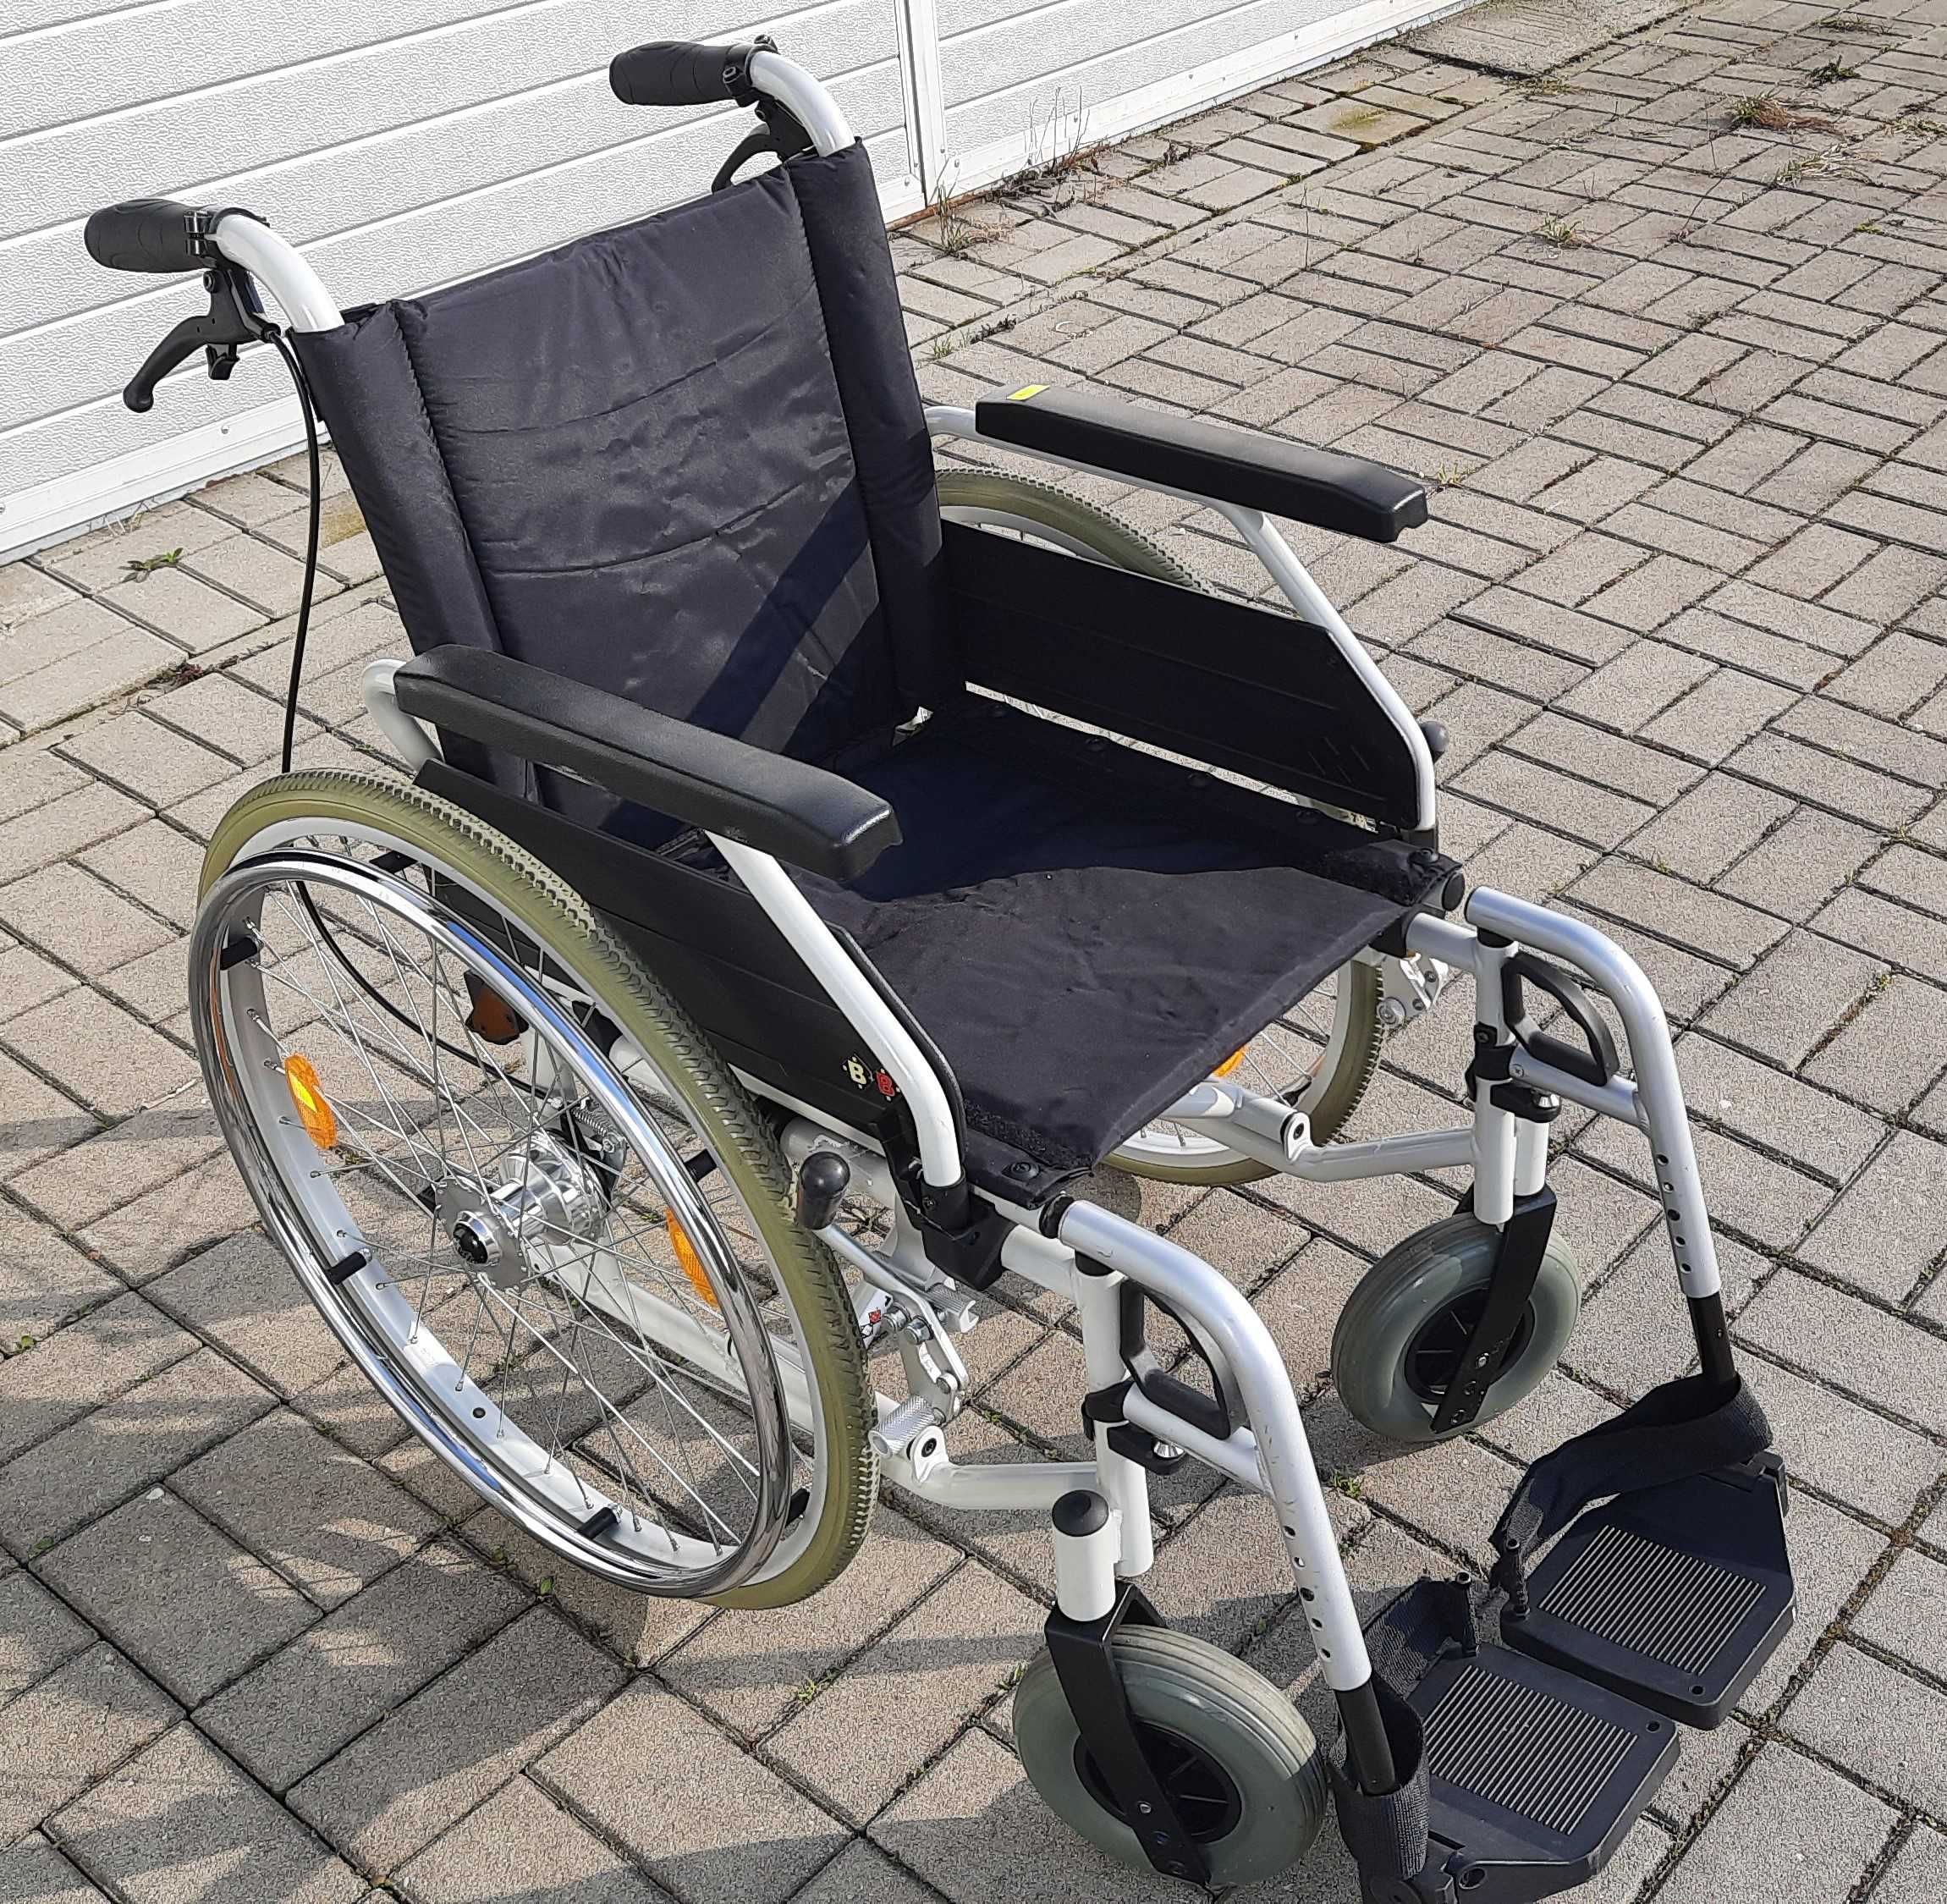 Wózek inwalidzki zwykły składany tradycyjny duży wybór mocny zadbany